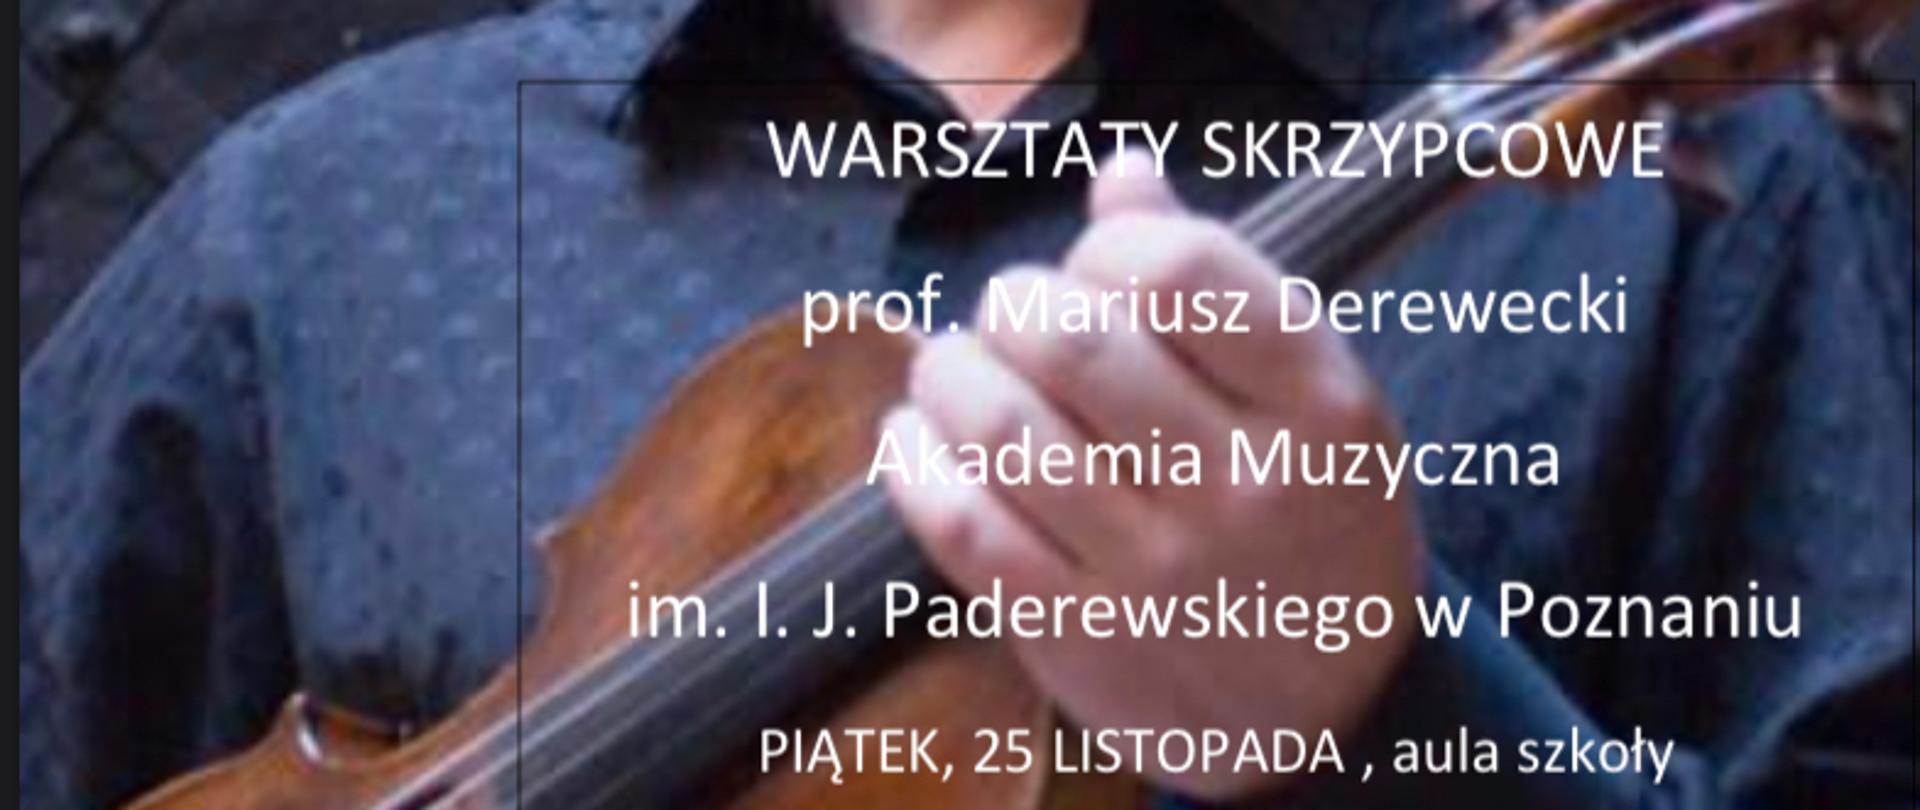 na całym zdjęcie profesor akademii muzycznej, w rękach trzyma skrzypce. Na zdjęciu białe litery z godzinami dla poszczególnych grup